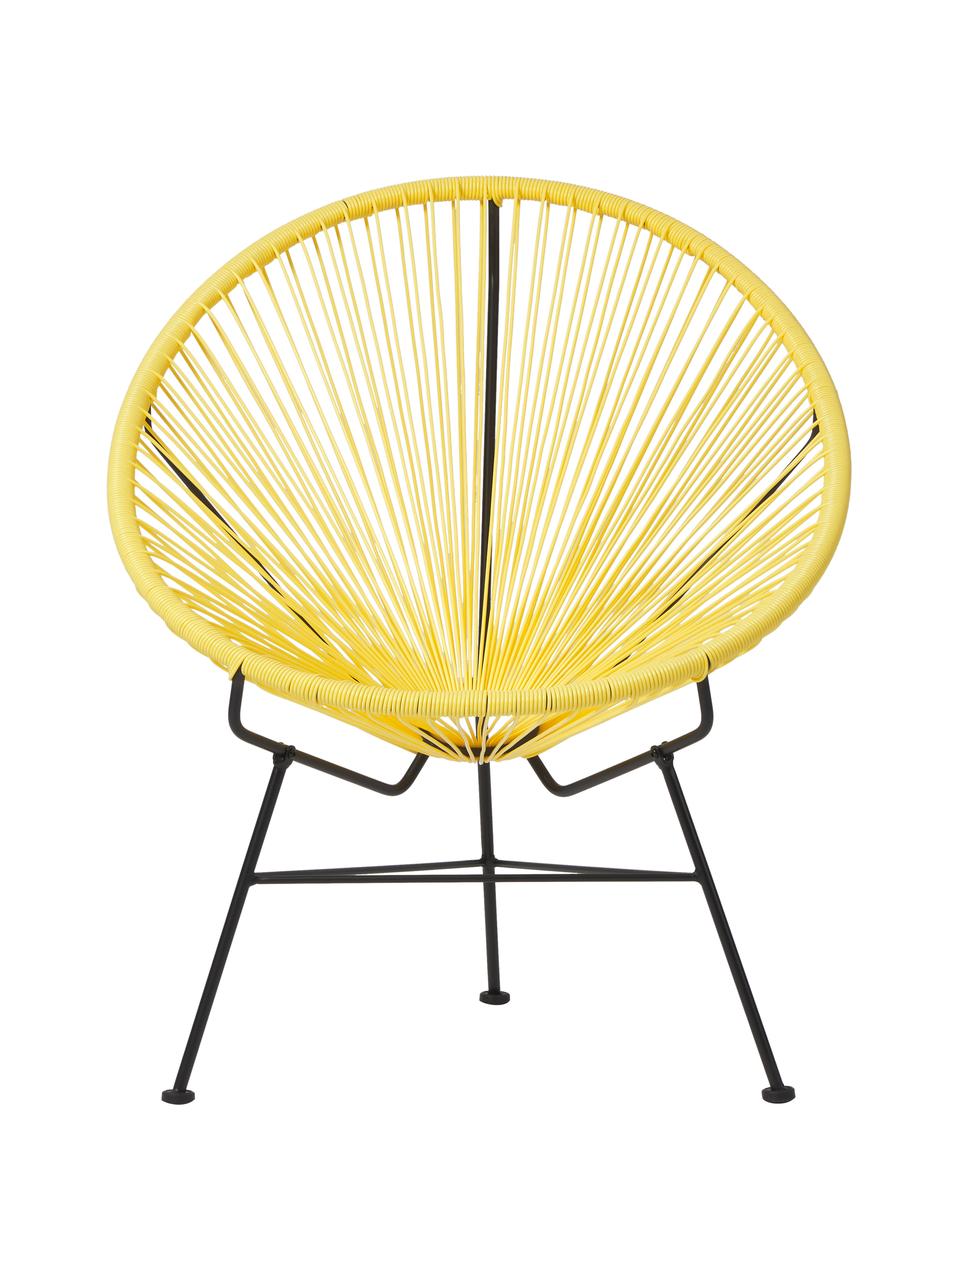 Loungesessel Bahia aus Kunststoff-Geflecht in Sonnengelb, Sitzfläche: Kunststoff, Gestell: Metall, pulverbeschichtet, Gelb, B 81 x T 73 cm